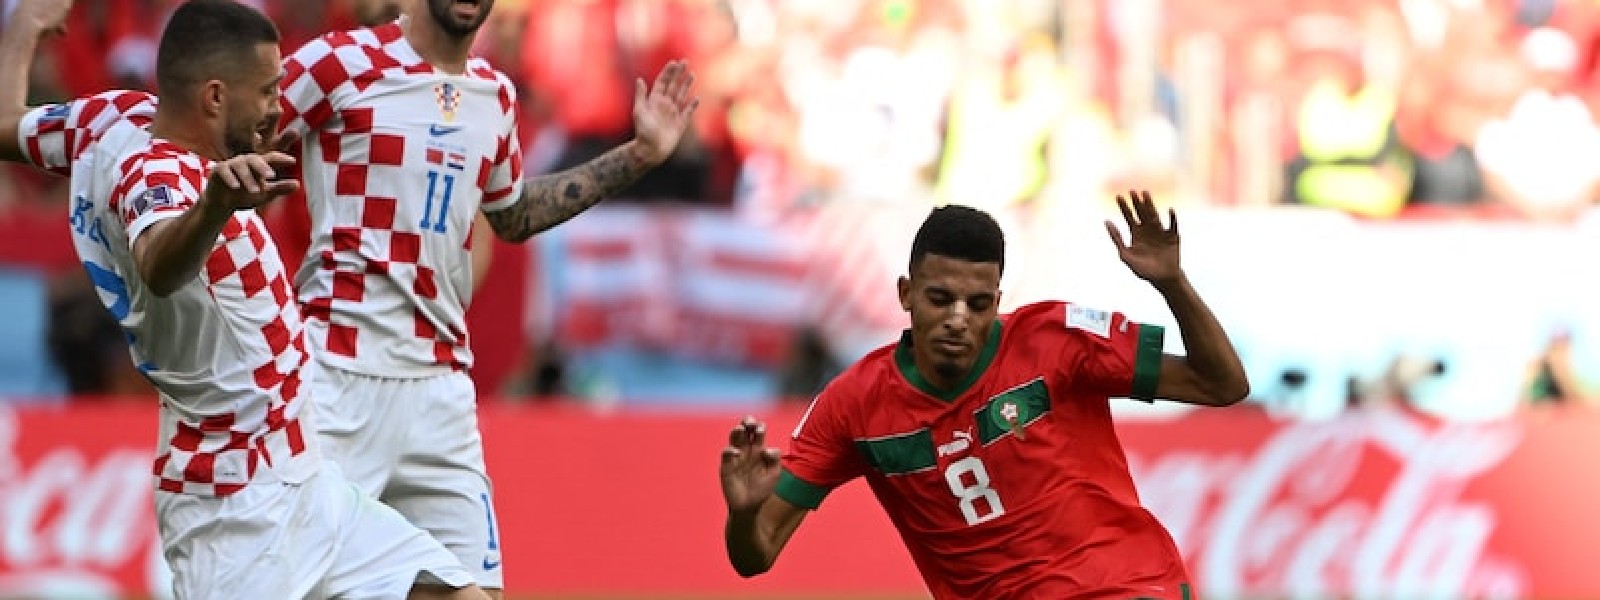 Morocco vs Croatia ends in a nil-all draw